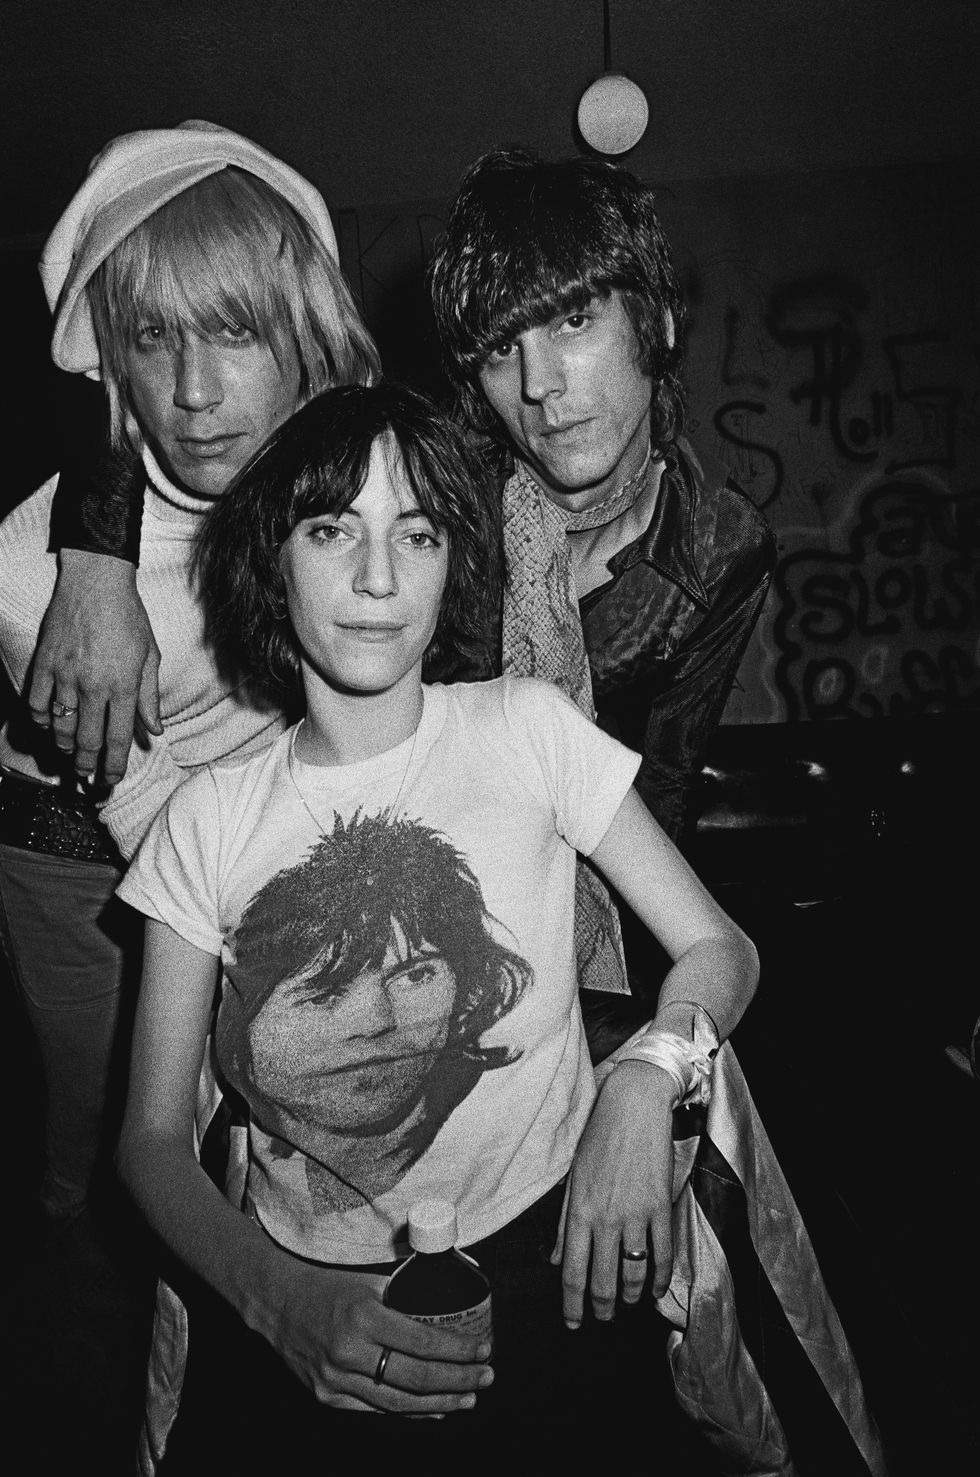 تتموضع هنا (باتي سميث) من أجل التقاط صورة مع (جايمس ويليامسون) و(إيغي بوب) من فرقة (ذا ستوجيز) The Stooges في (لوس أنجلوس) سنة 1974.